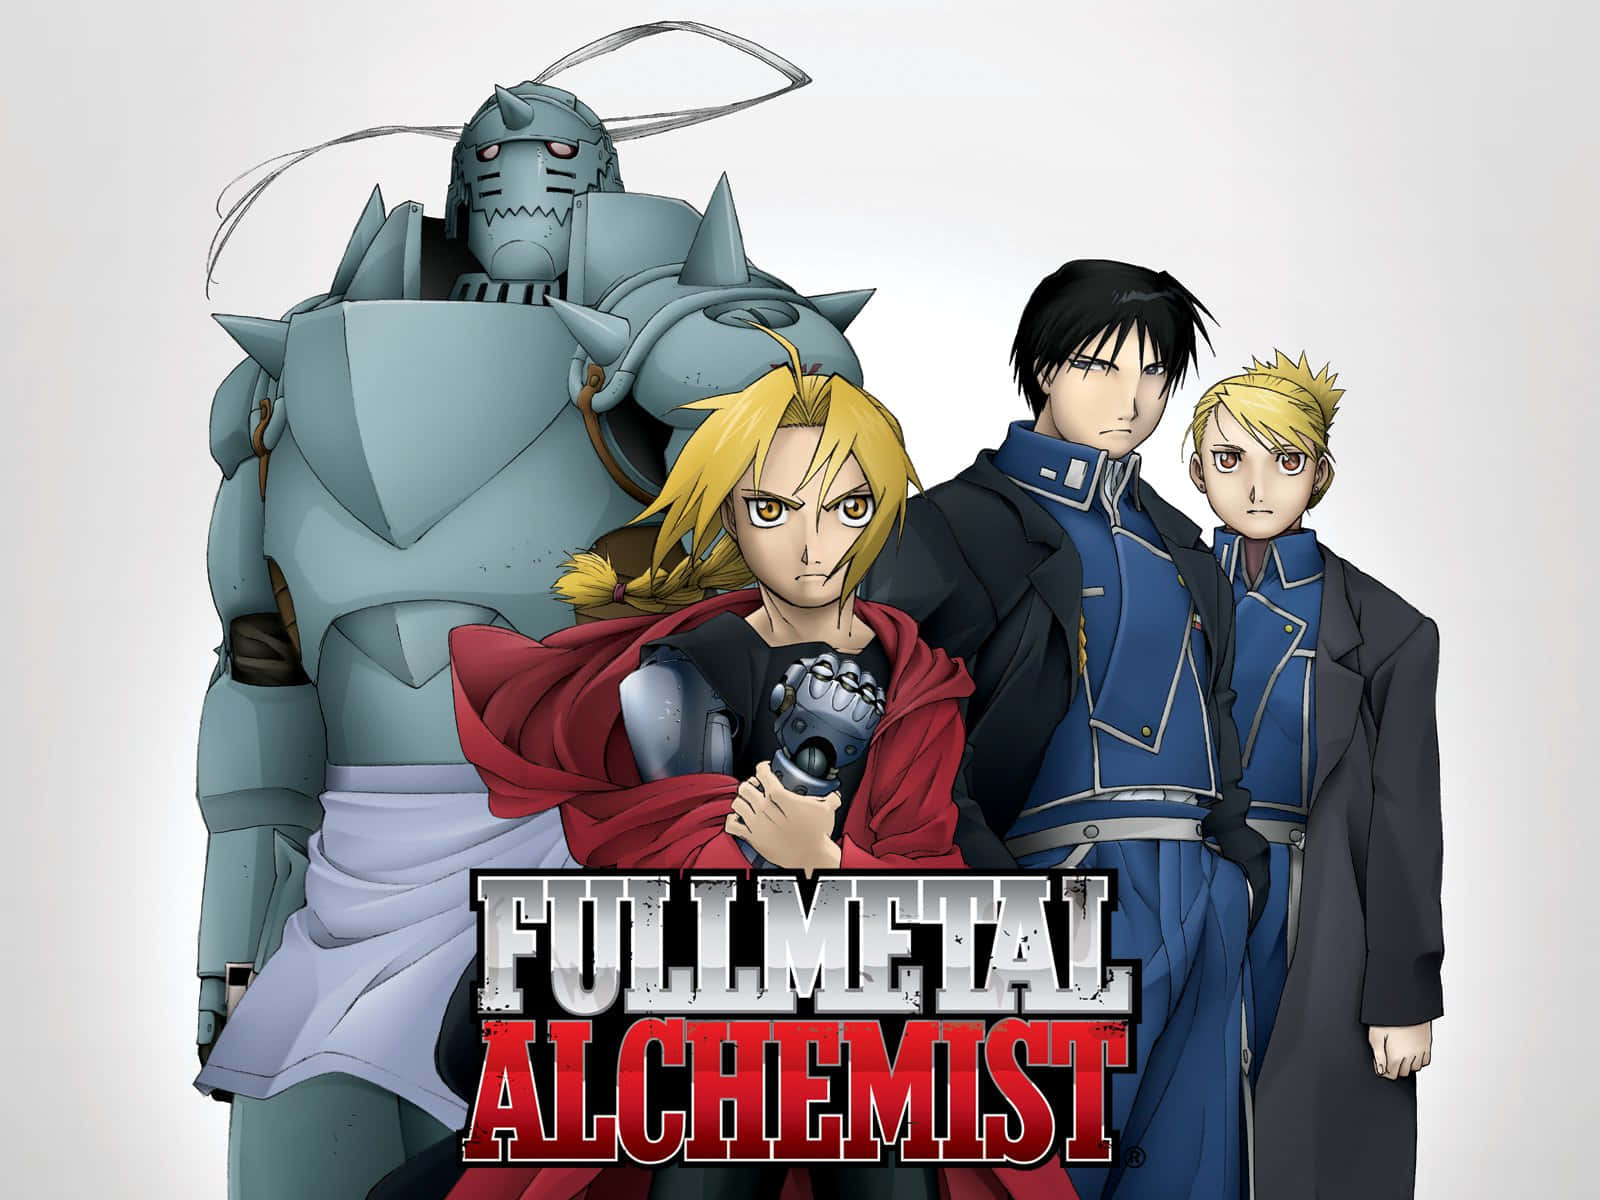 Fullmetal Alchemist Digital Drawing Picture